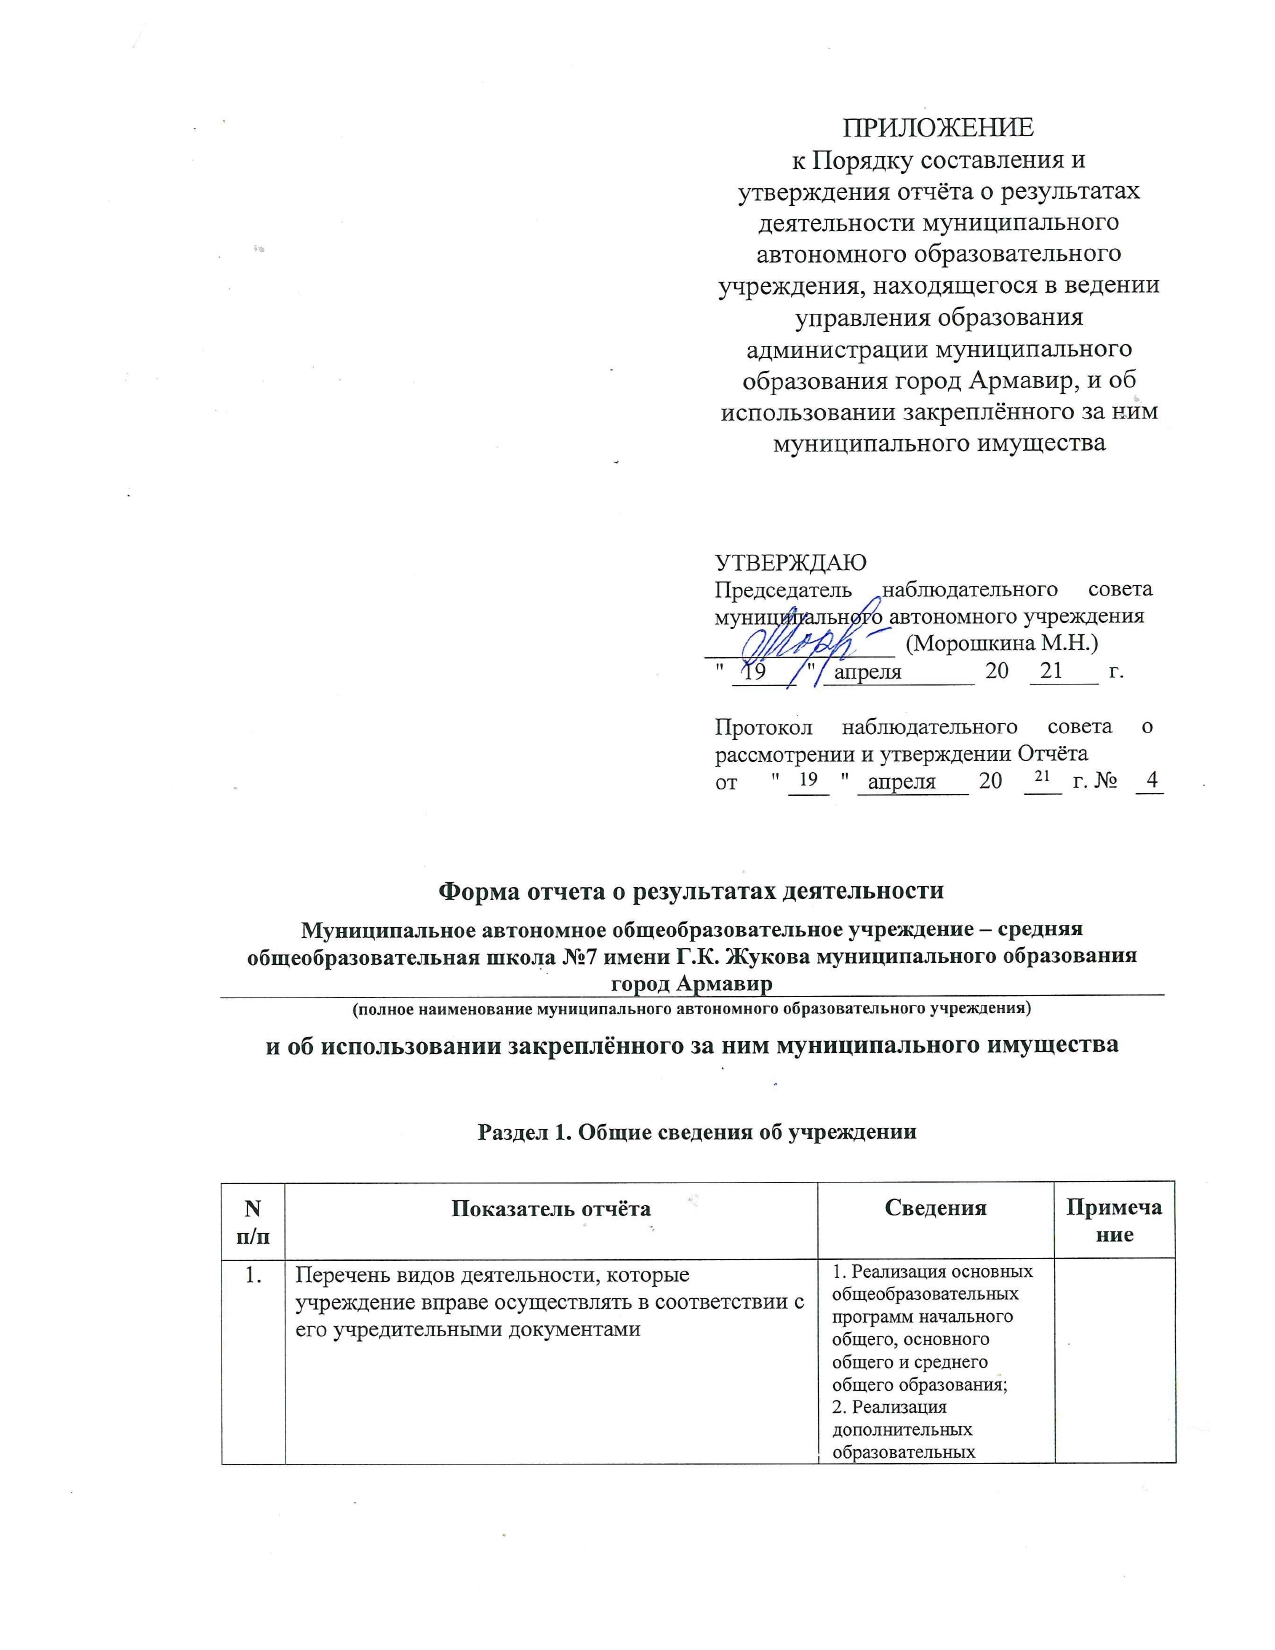 Отчет о результатах деятельности МАОУ СОШ №7 имени Г.К. Жукова_page-0001.jpg